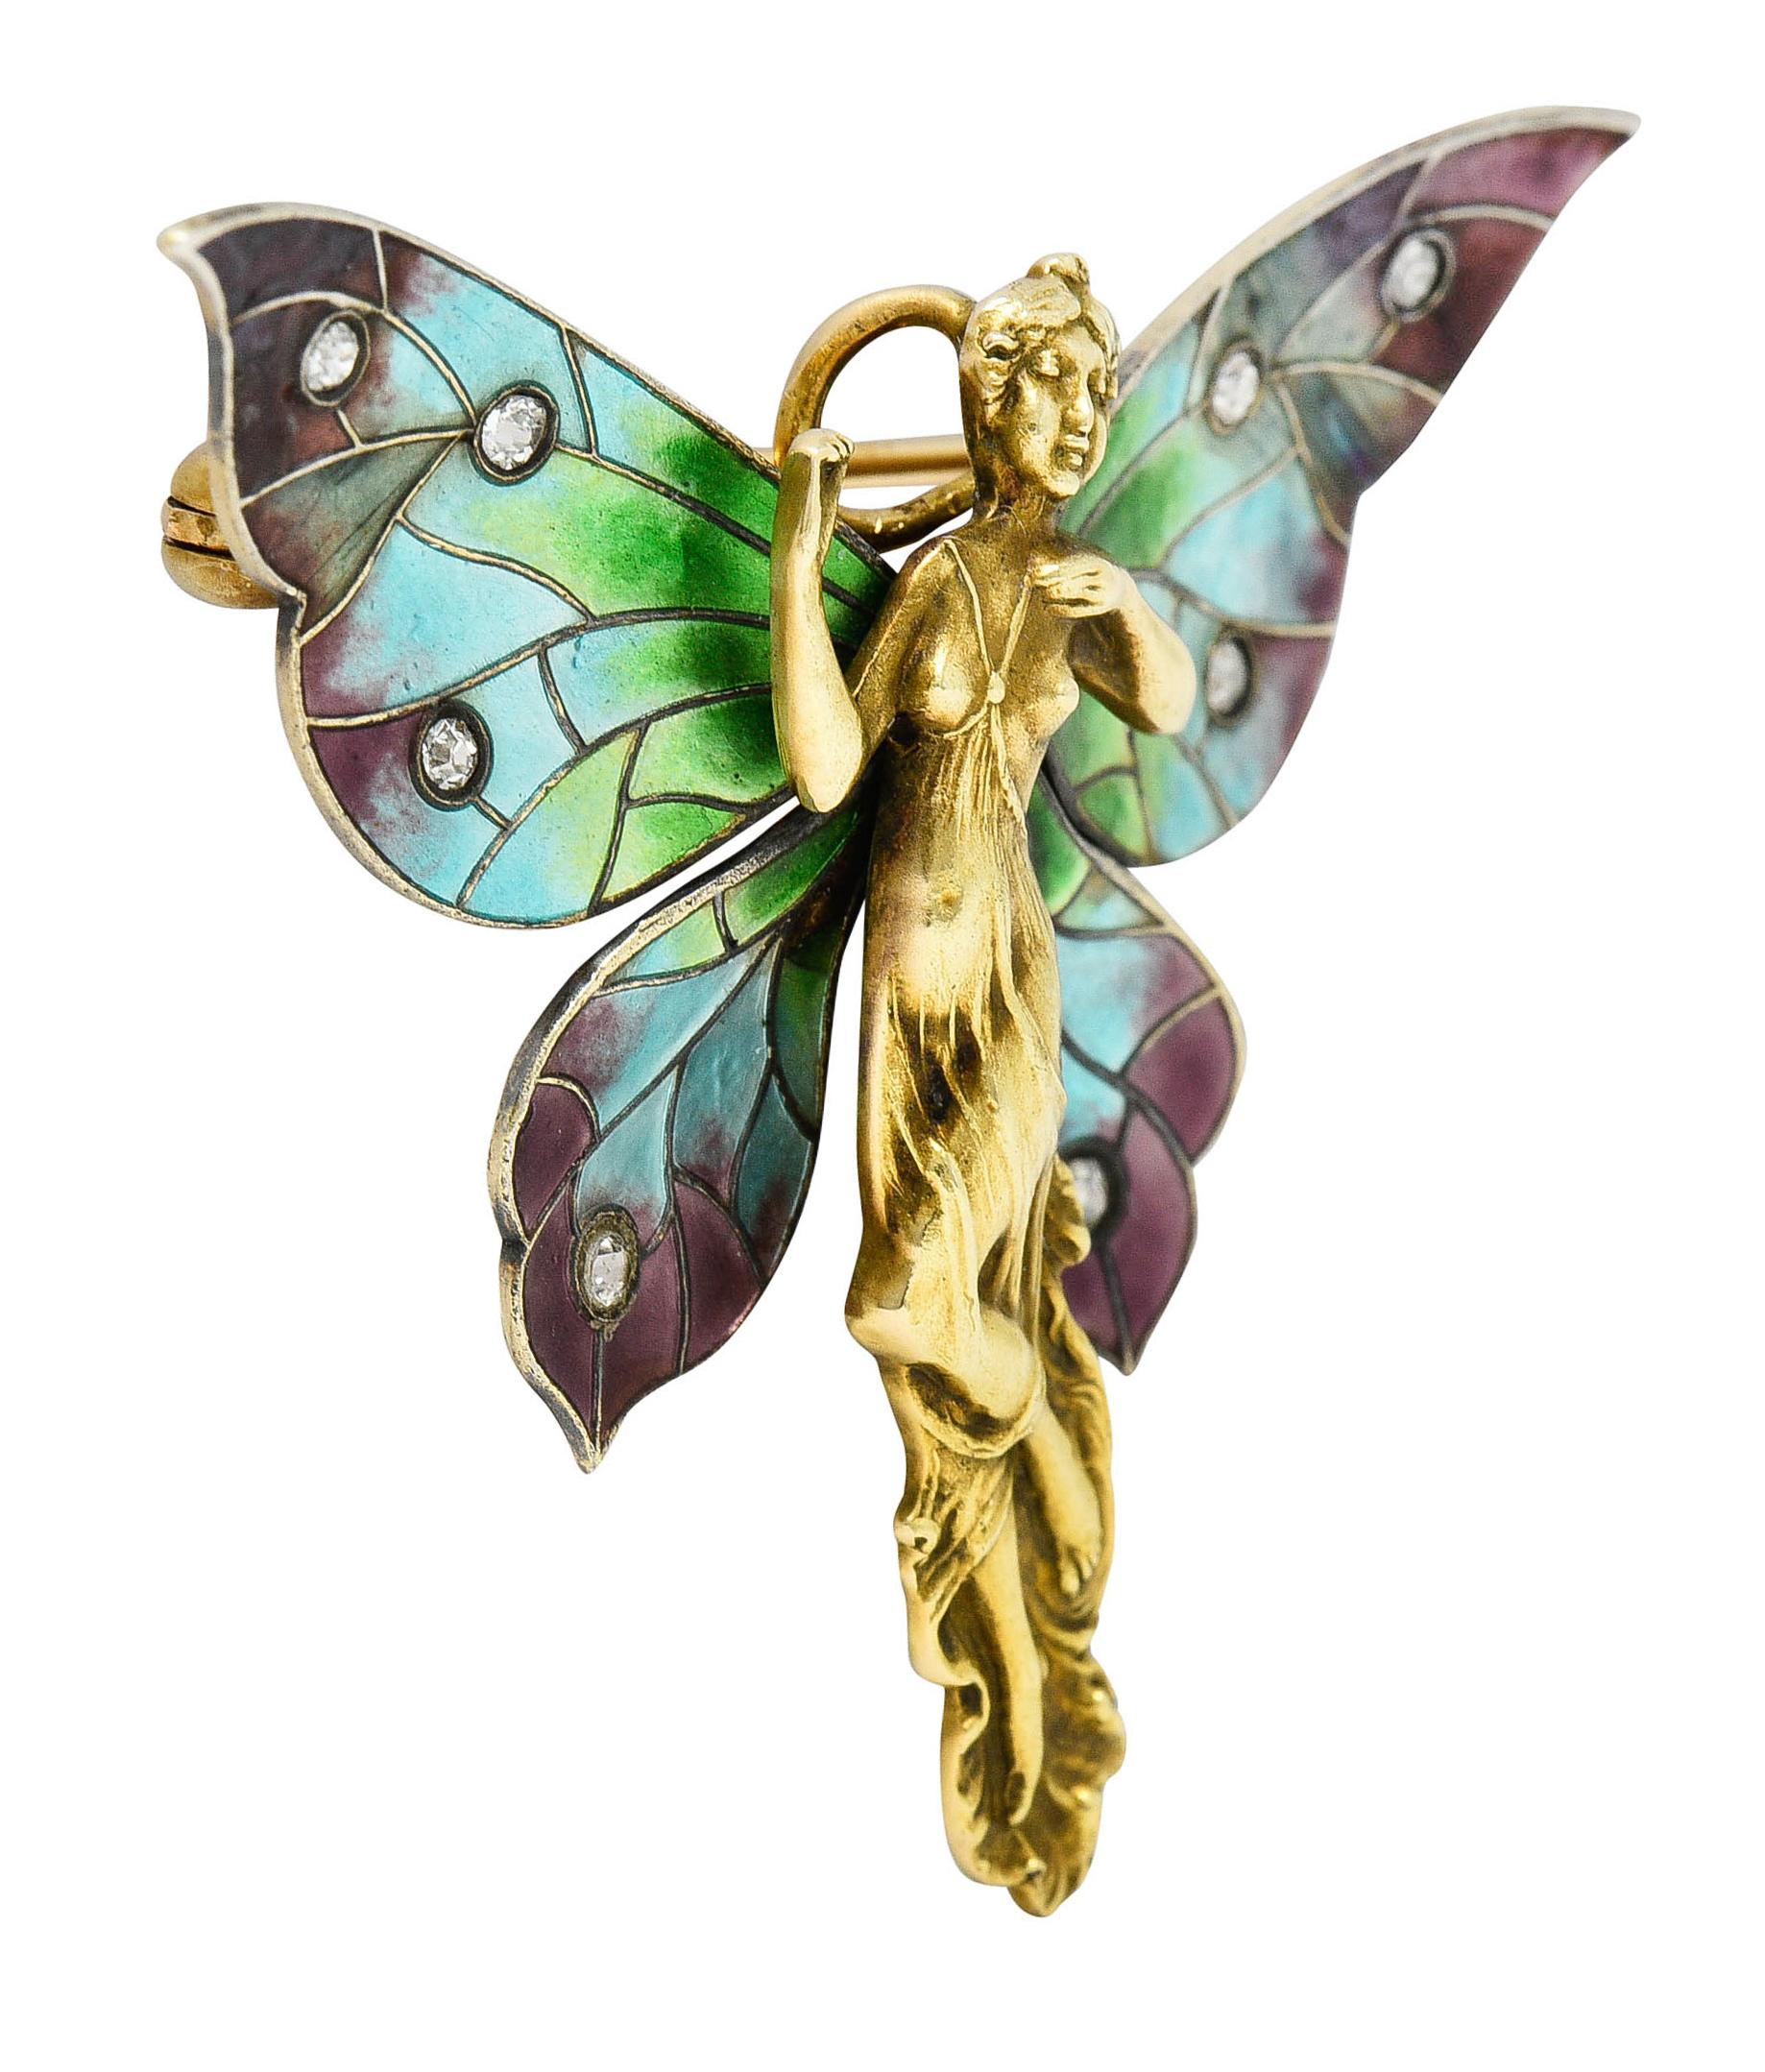 La broche est conçue comme une fée avec une forme féminine très bien rendue

Avec des ailes déployées brillantes d'émail irisé - ombré vert, bleu et violet

Aucune perte - excellent pour l'âge

Serti de vieux diamants taille unique pesant